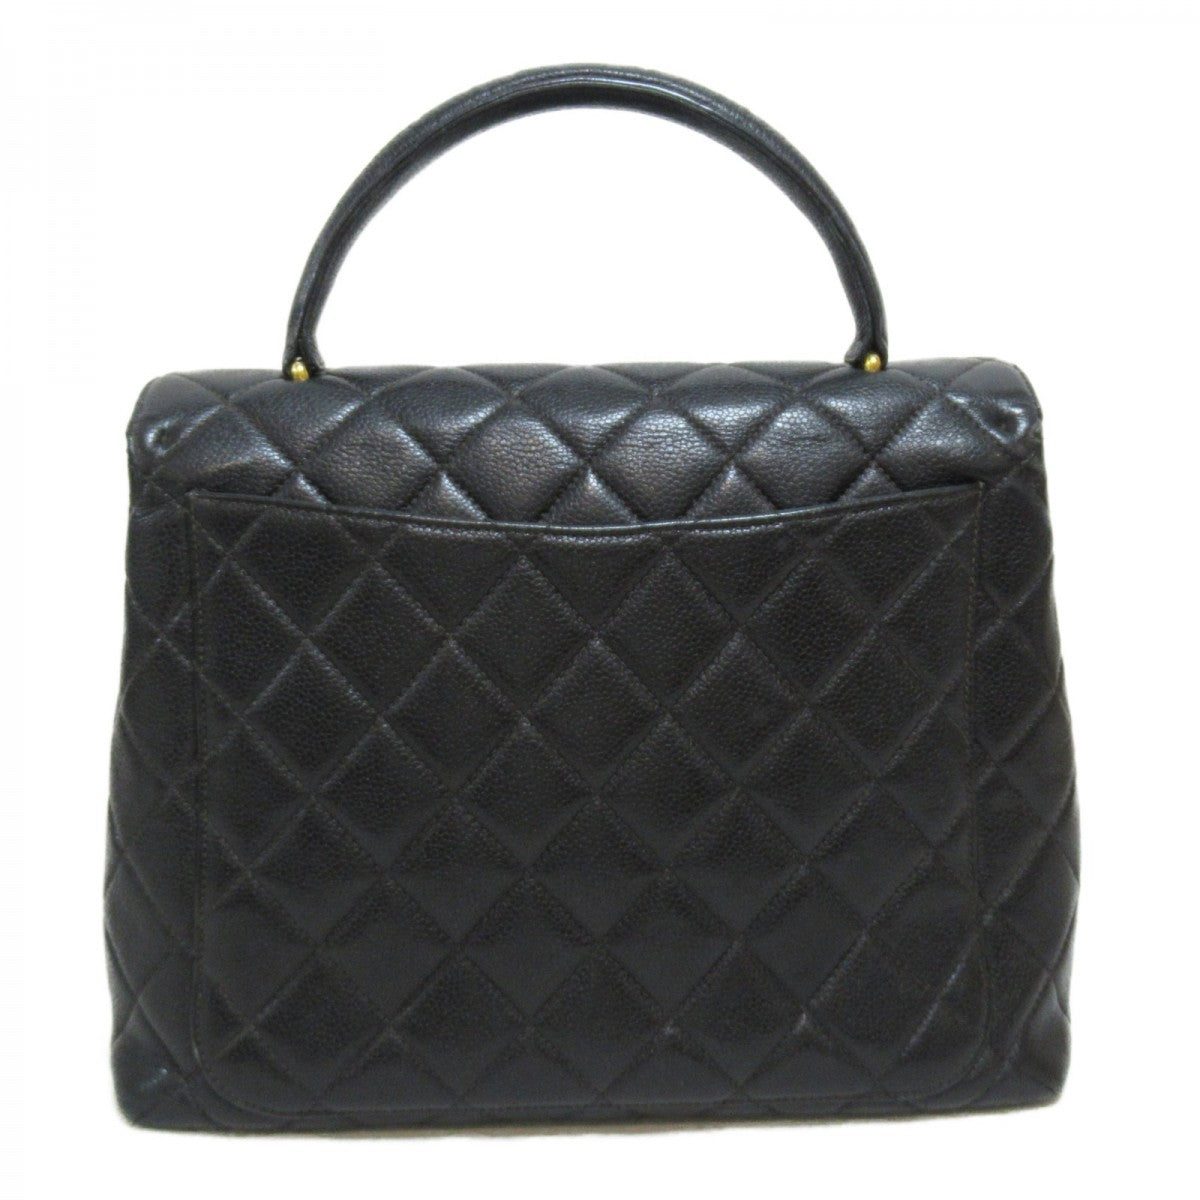 CC Quilted Caviar Handbag